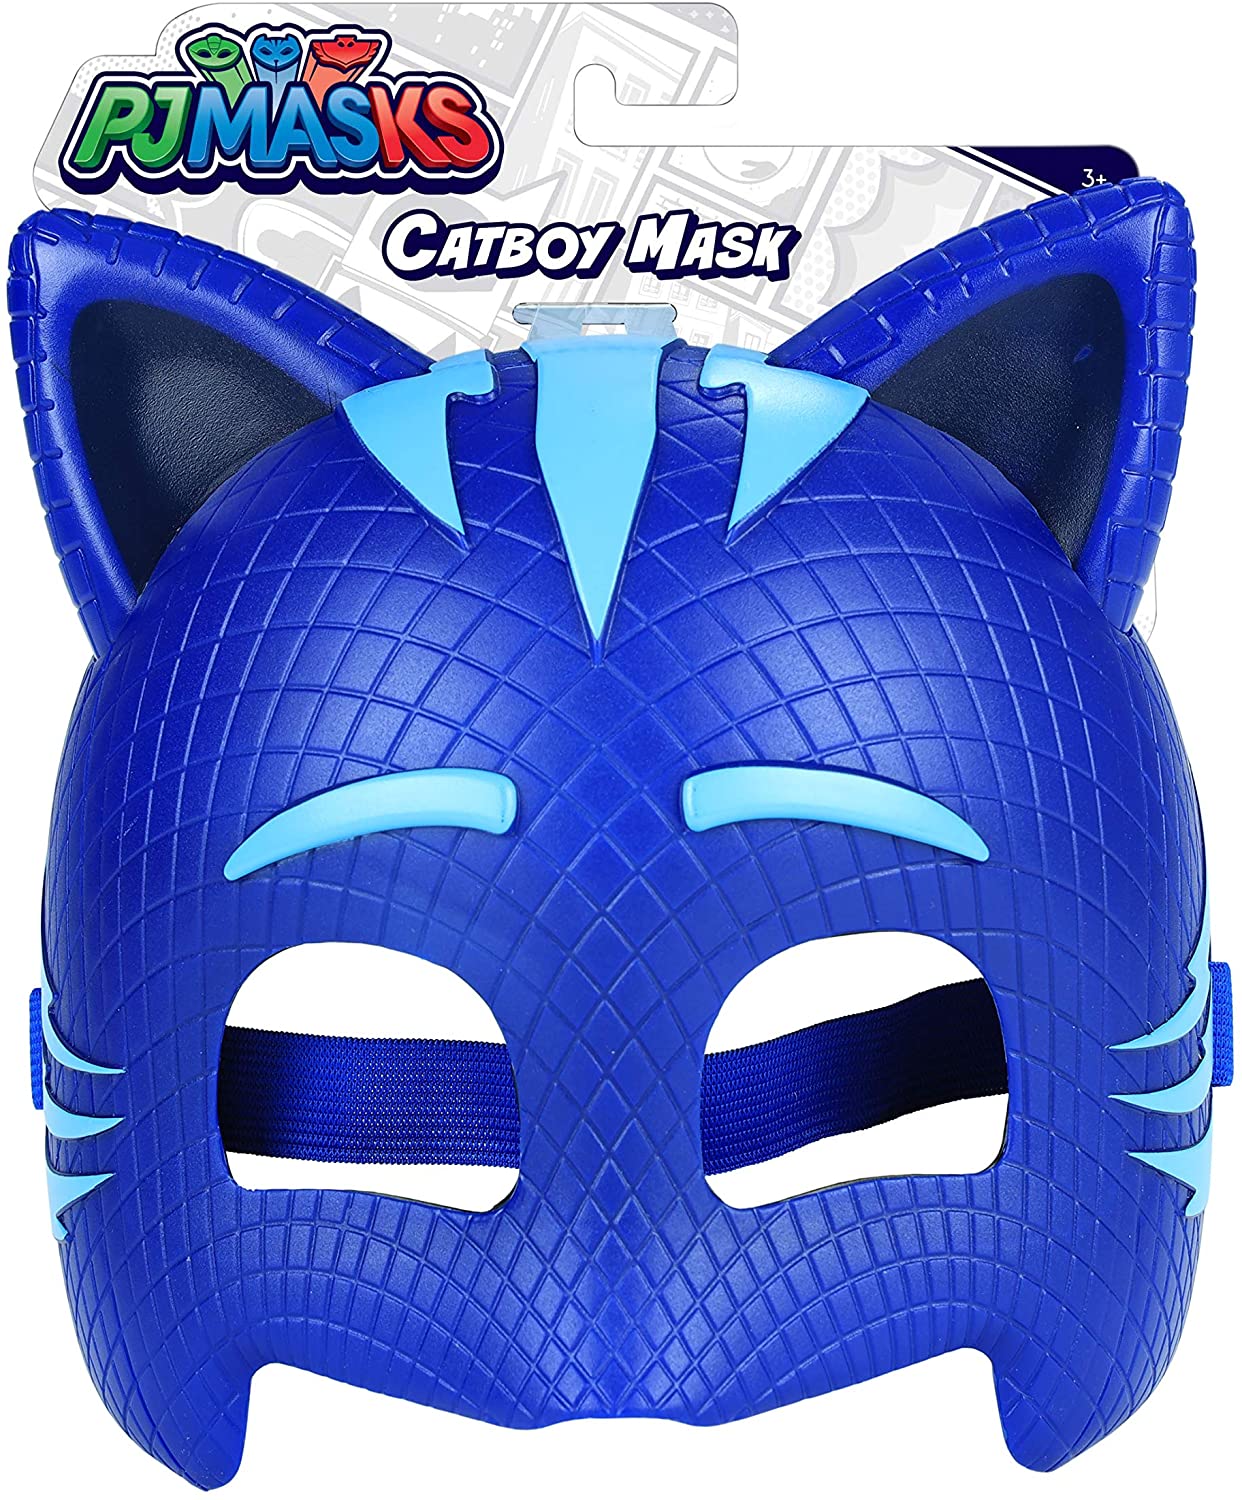 PJ Masks Catboy Mask Set